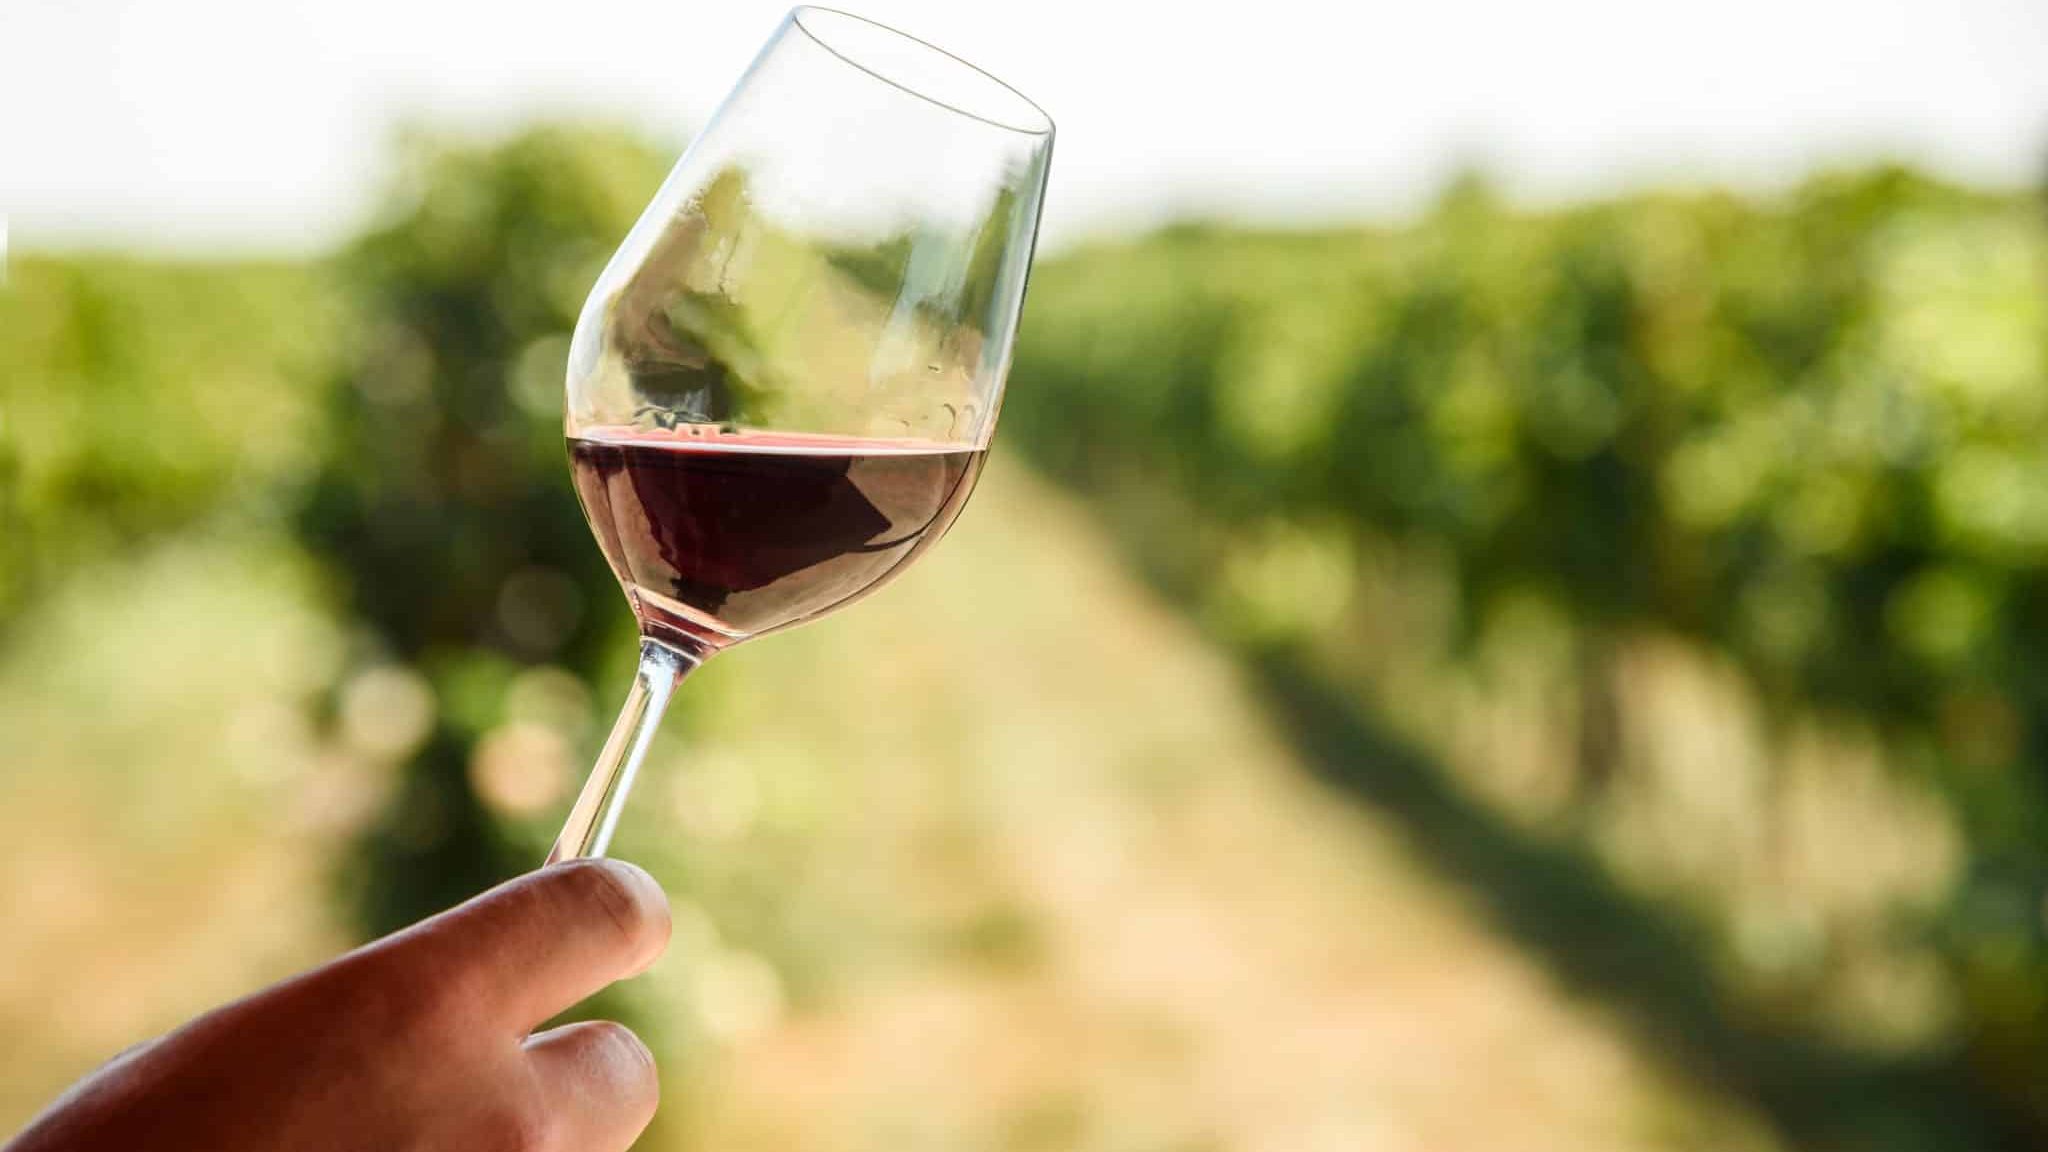 Les études menées sur les bienfaits du vin